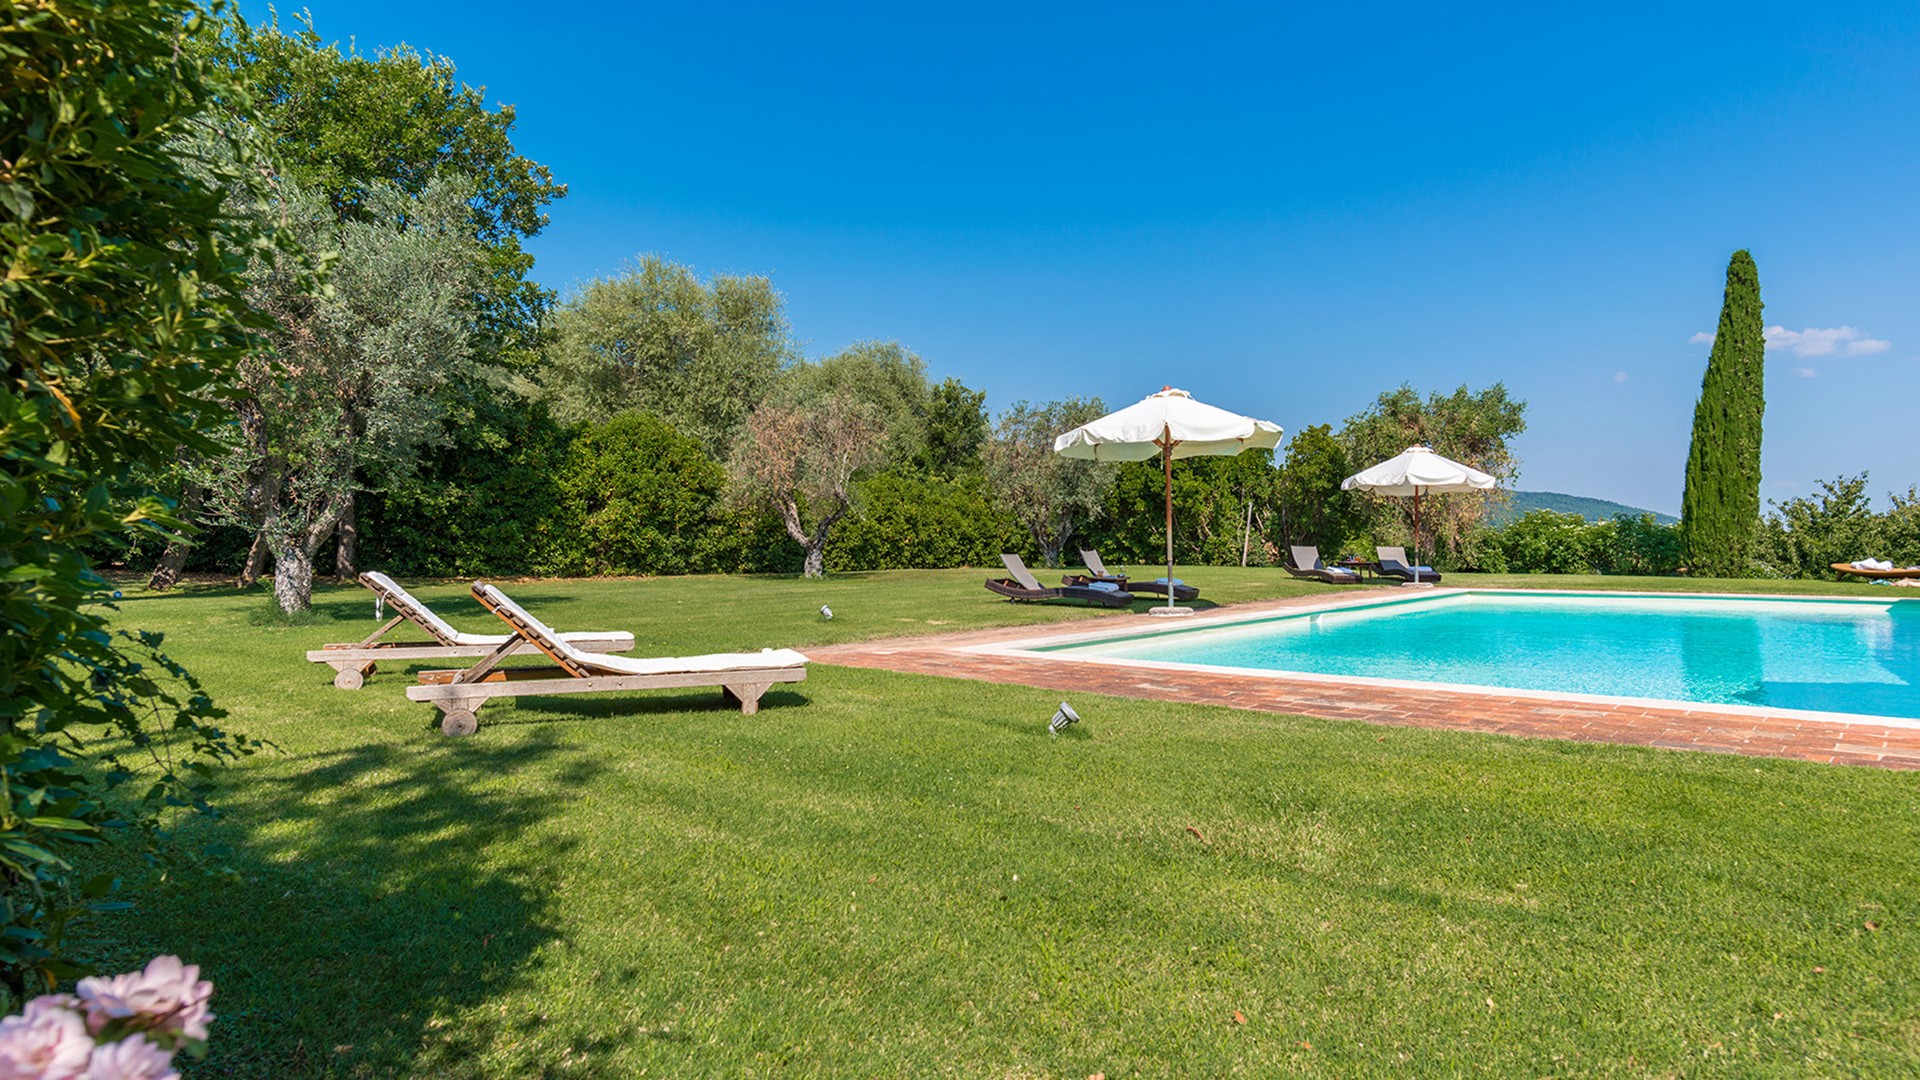 Villa Italy holiday villa for rent Tuscany Cetona Siena hillside ...